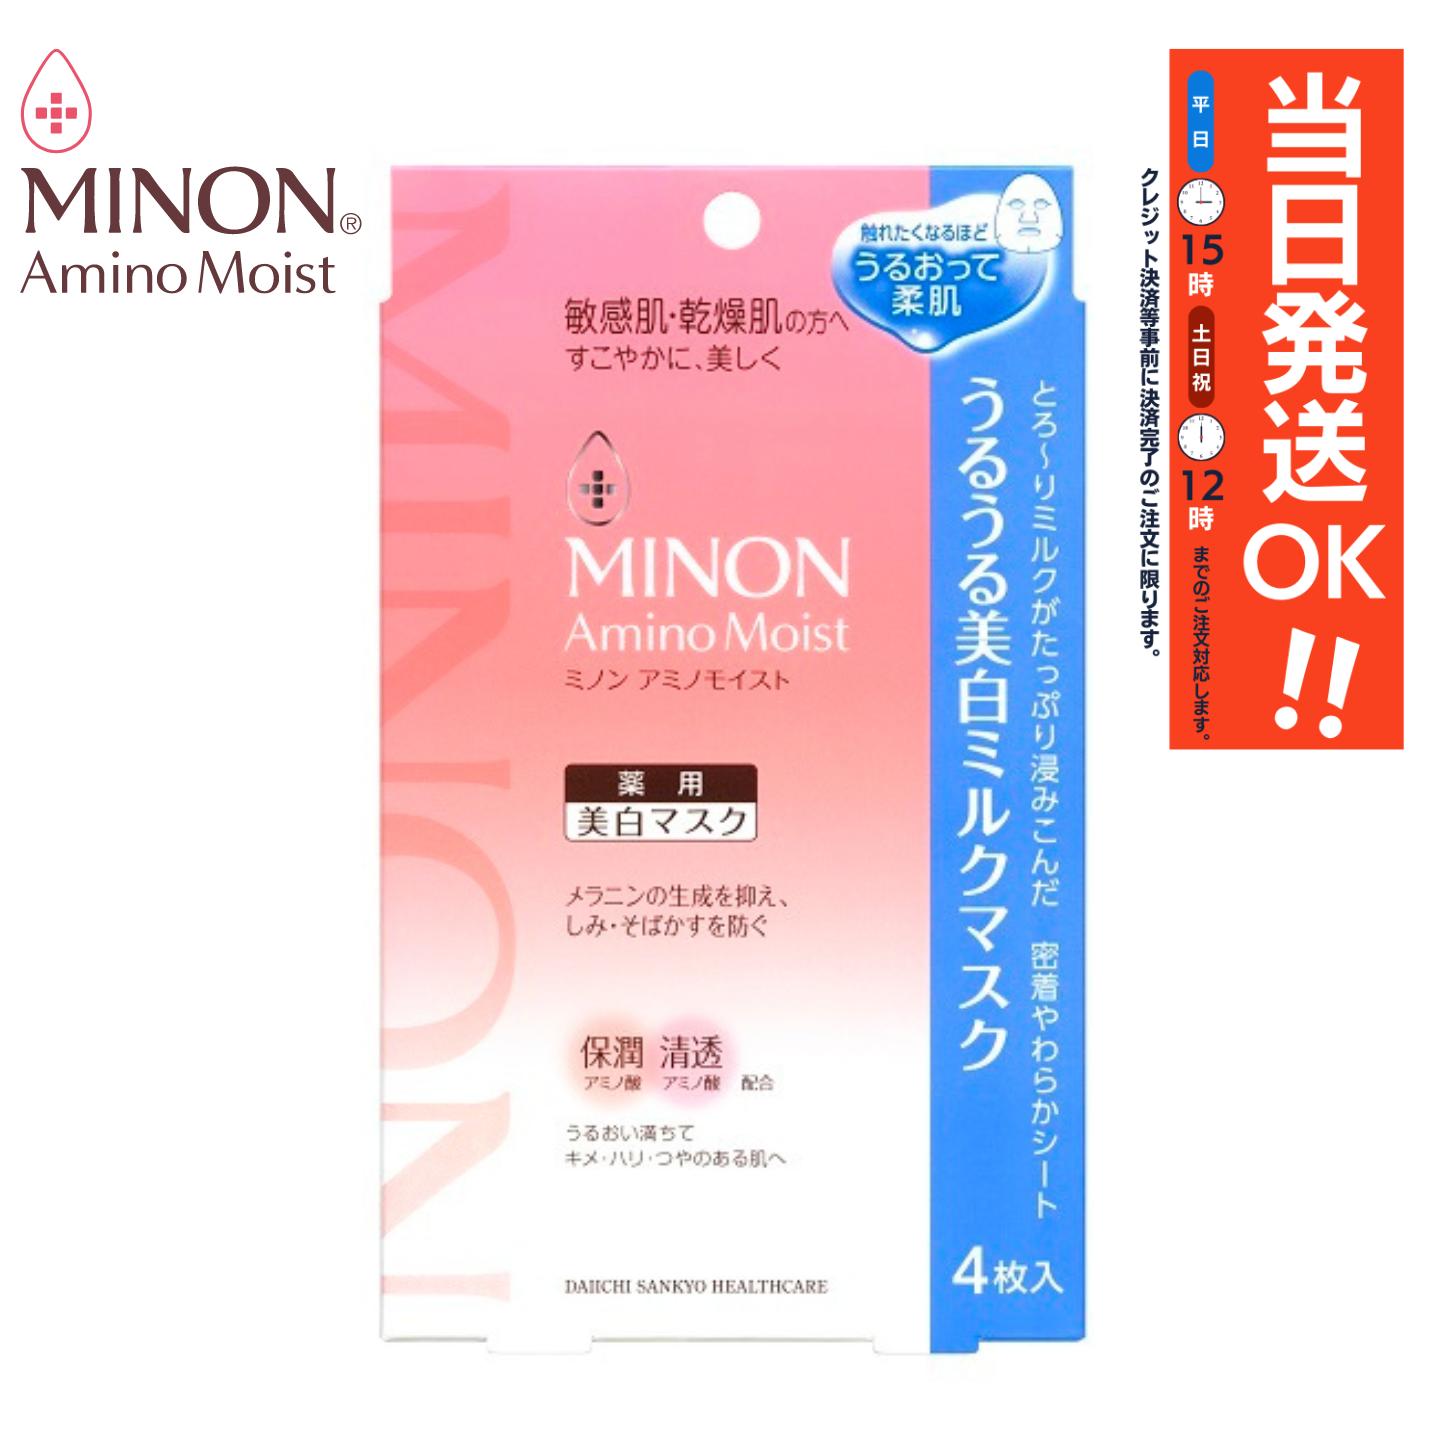 MINON(ミノン) アミノモイスト うるうる美白ミルクマスク 20ml×4枚入/MINON/敏感肌/美白マスク/フェスマスク